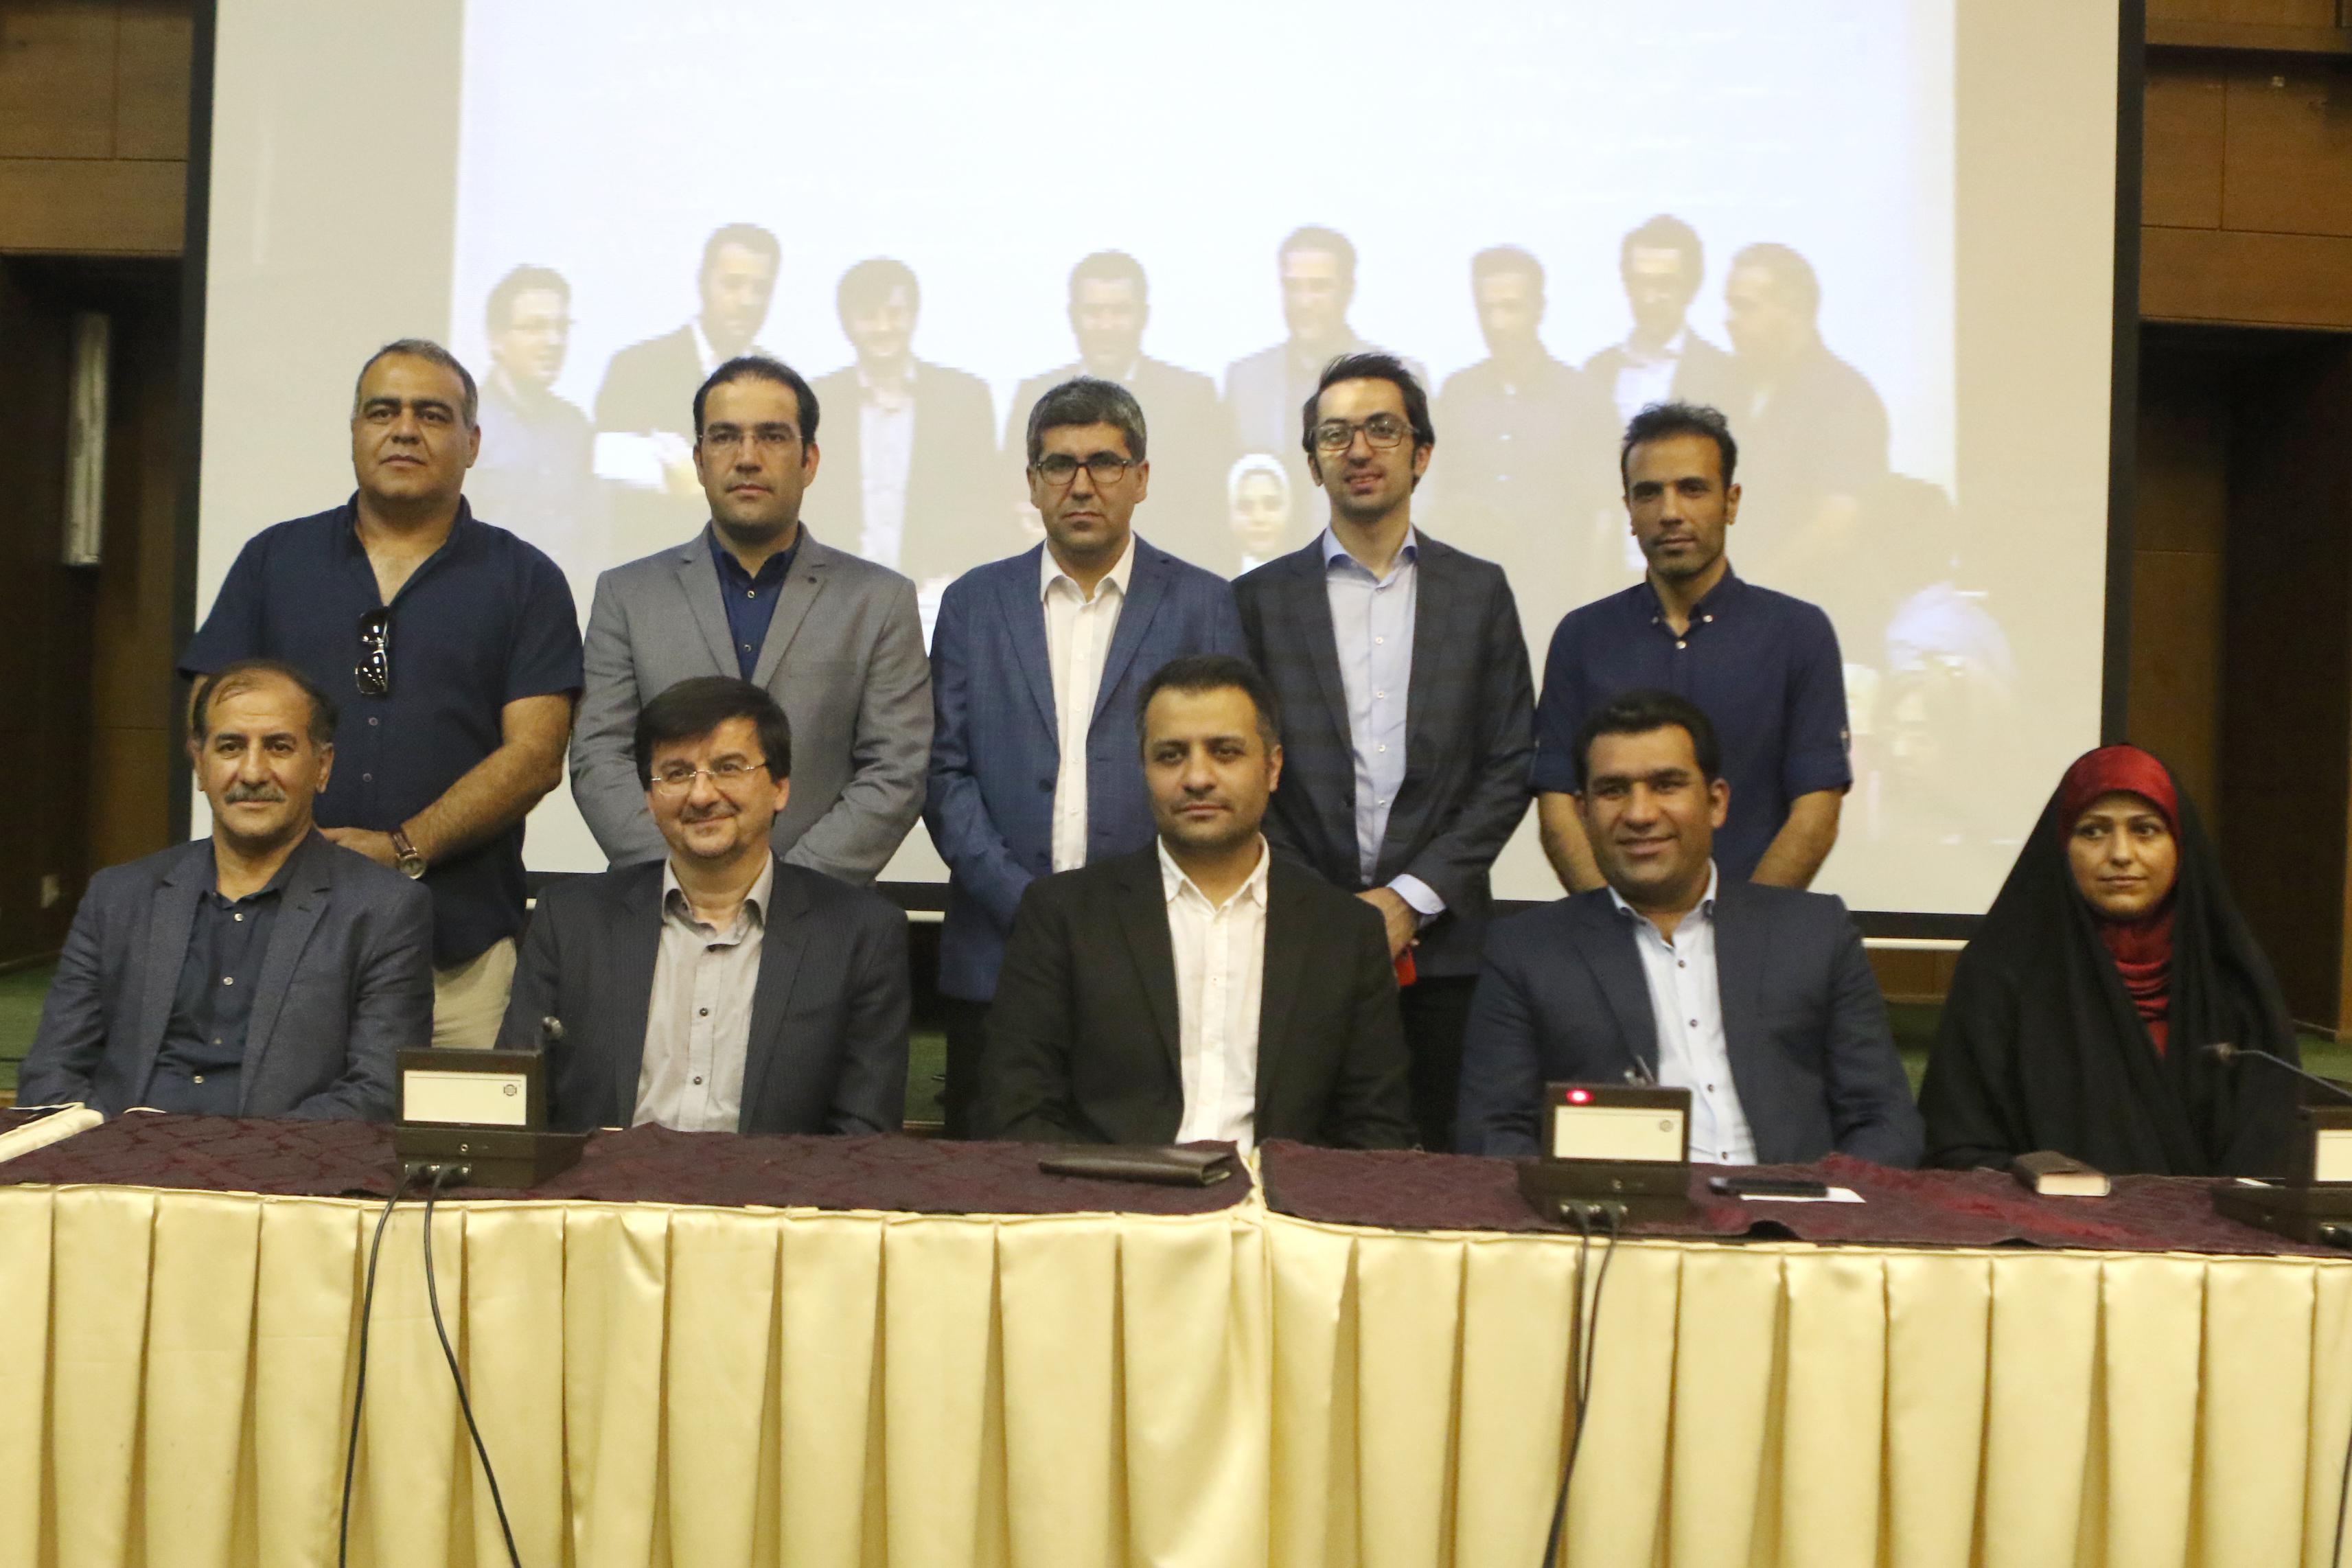 منتخبین هیأت رئیسه جدید انجمن ورزشی نویسان ایران مشخص شدند